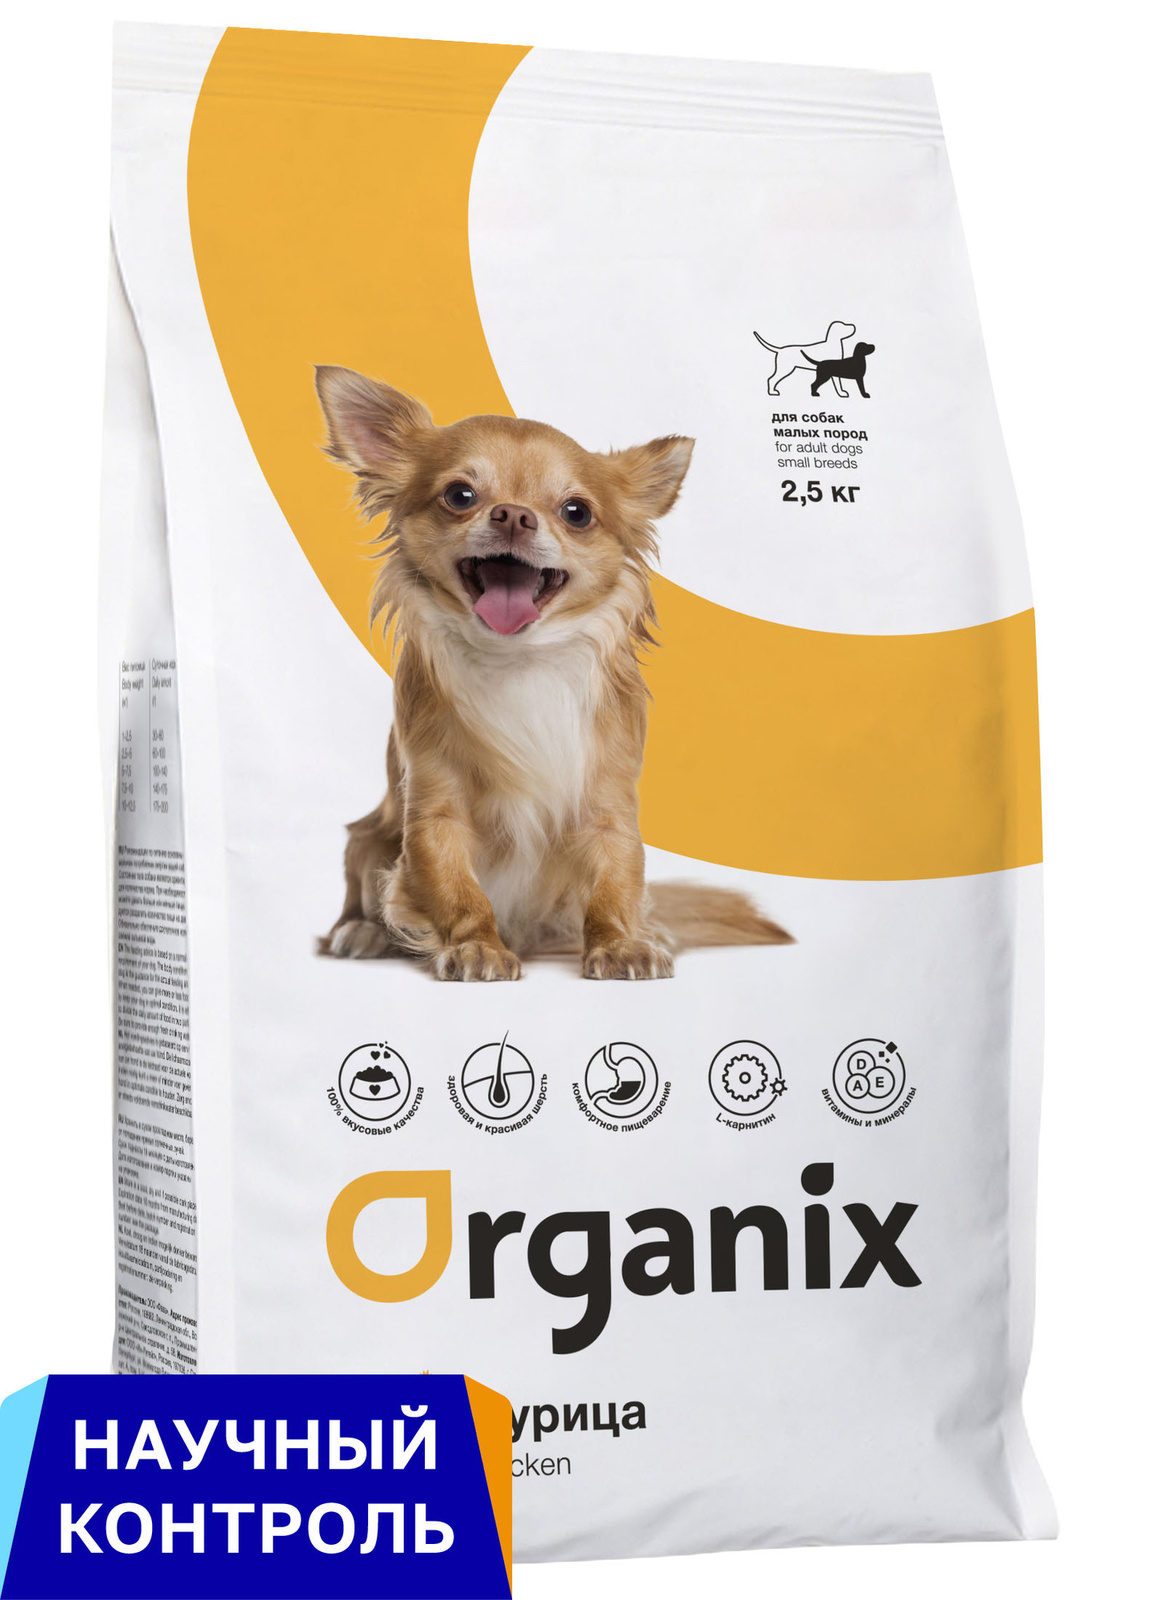 Organix  сухой корм для собак малых пород, с курицей (2,5 кг) Organix  сухой корм для собак малых пород, с курицей (2,5 кг) - фото 1